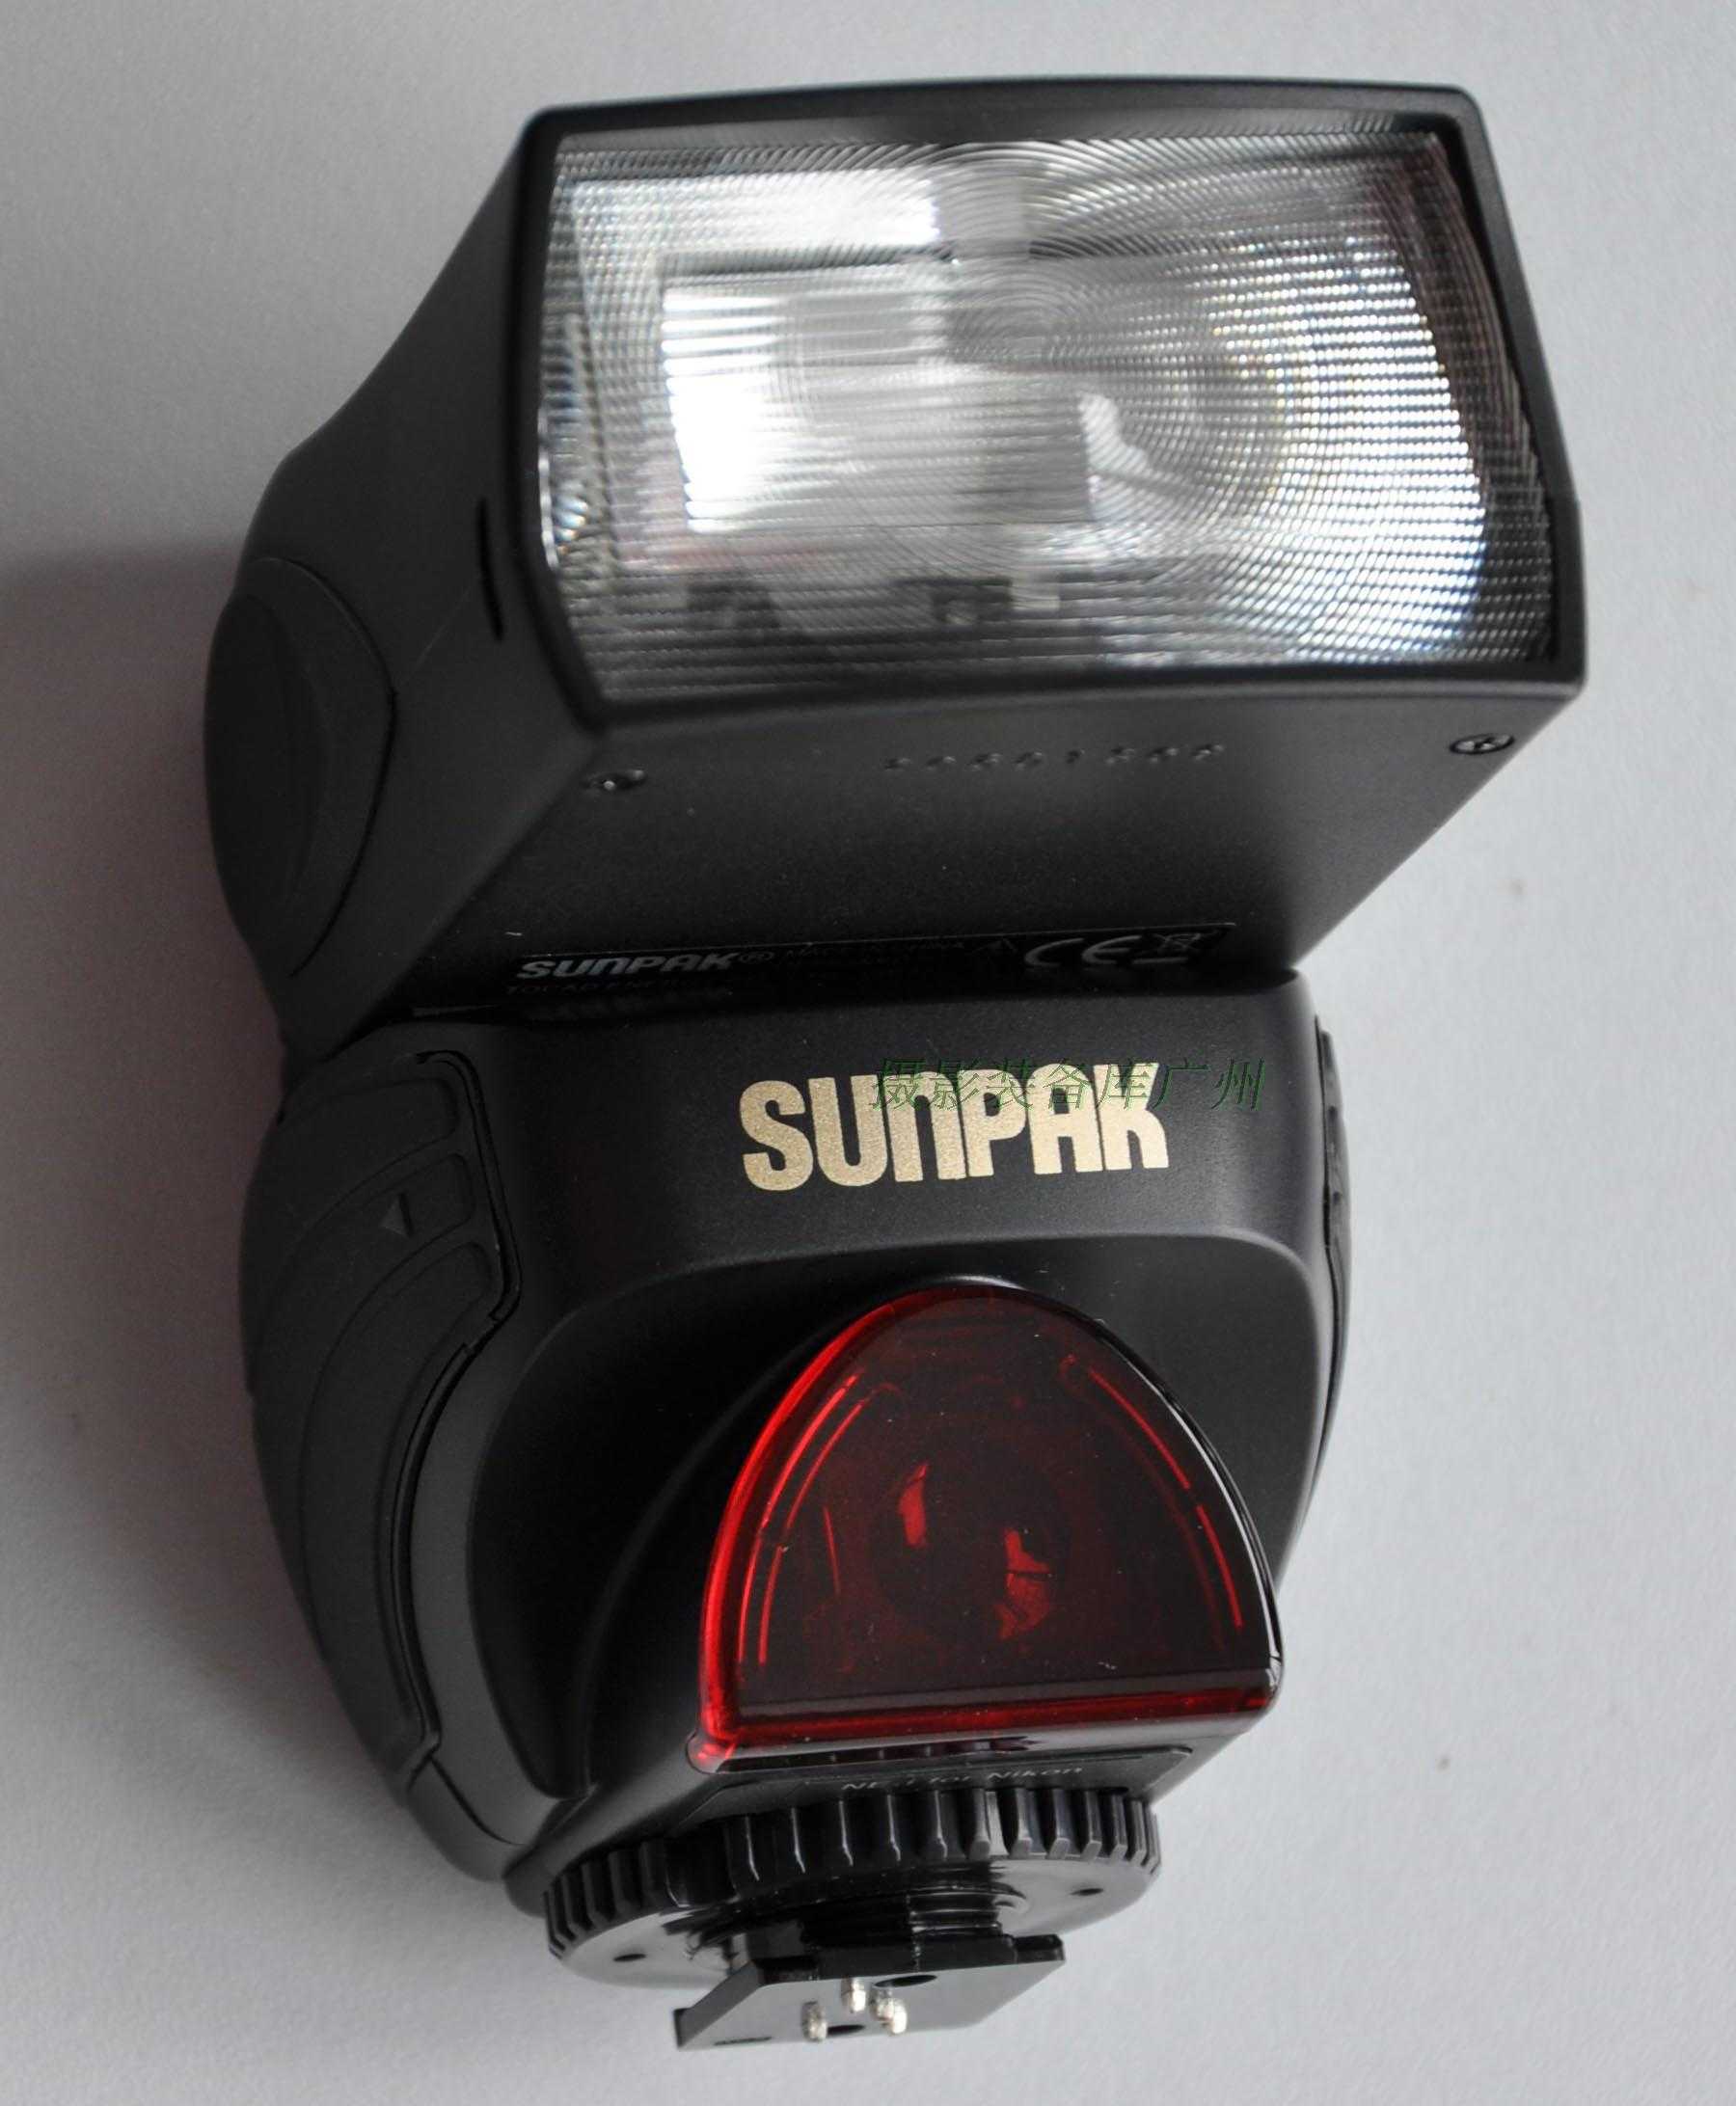 Sunpak pz40x for canon купить по акционной цене , отзывы и обзоры.